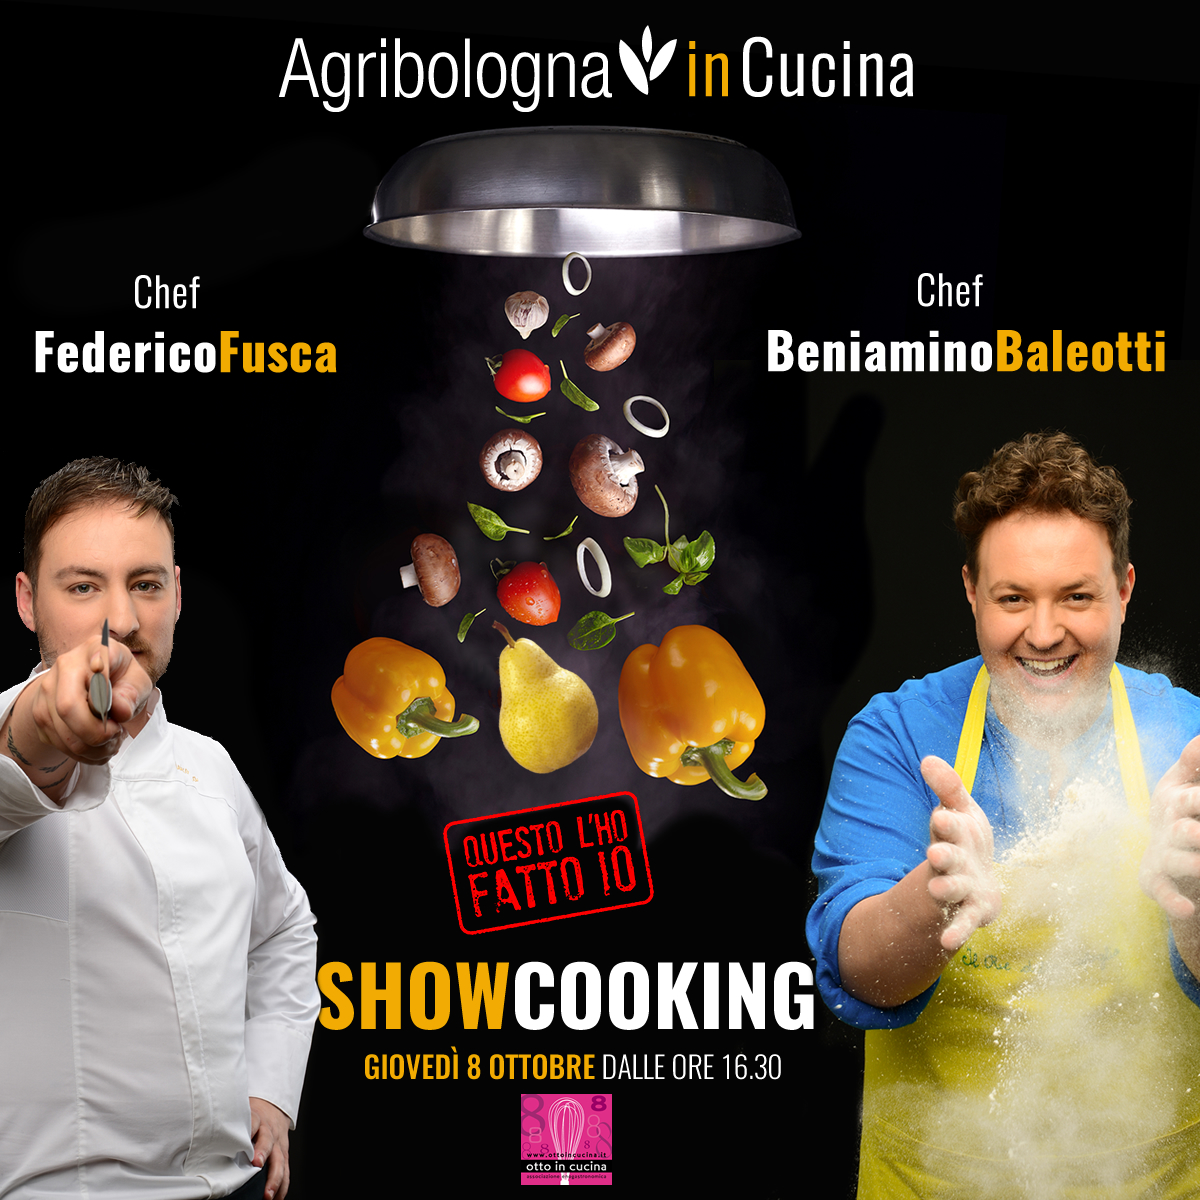 Showcooking firmato Agribologna con gli chef Beniamino Baleotti e Federico Fusca